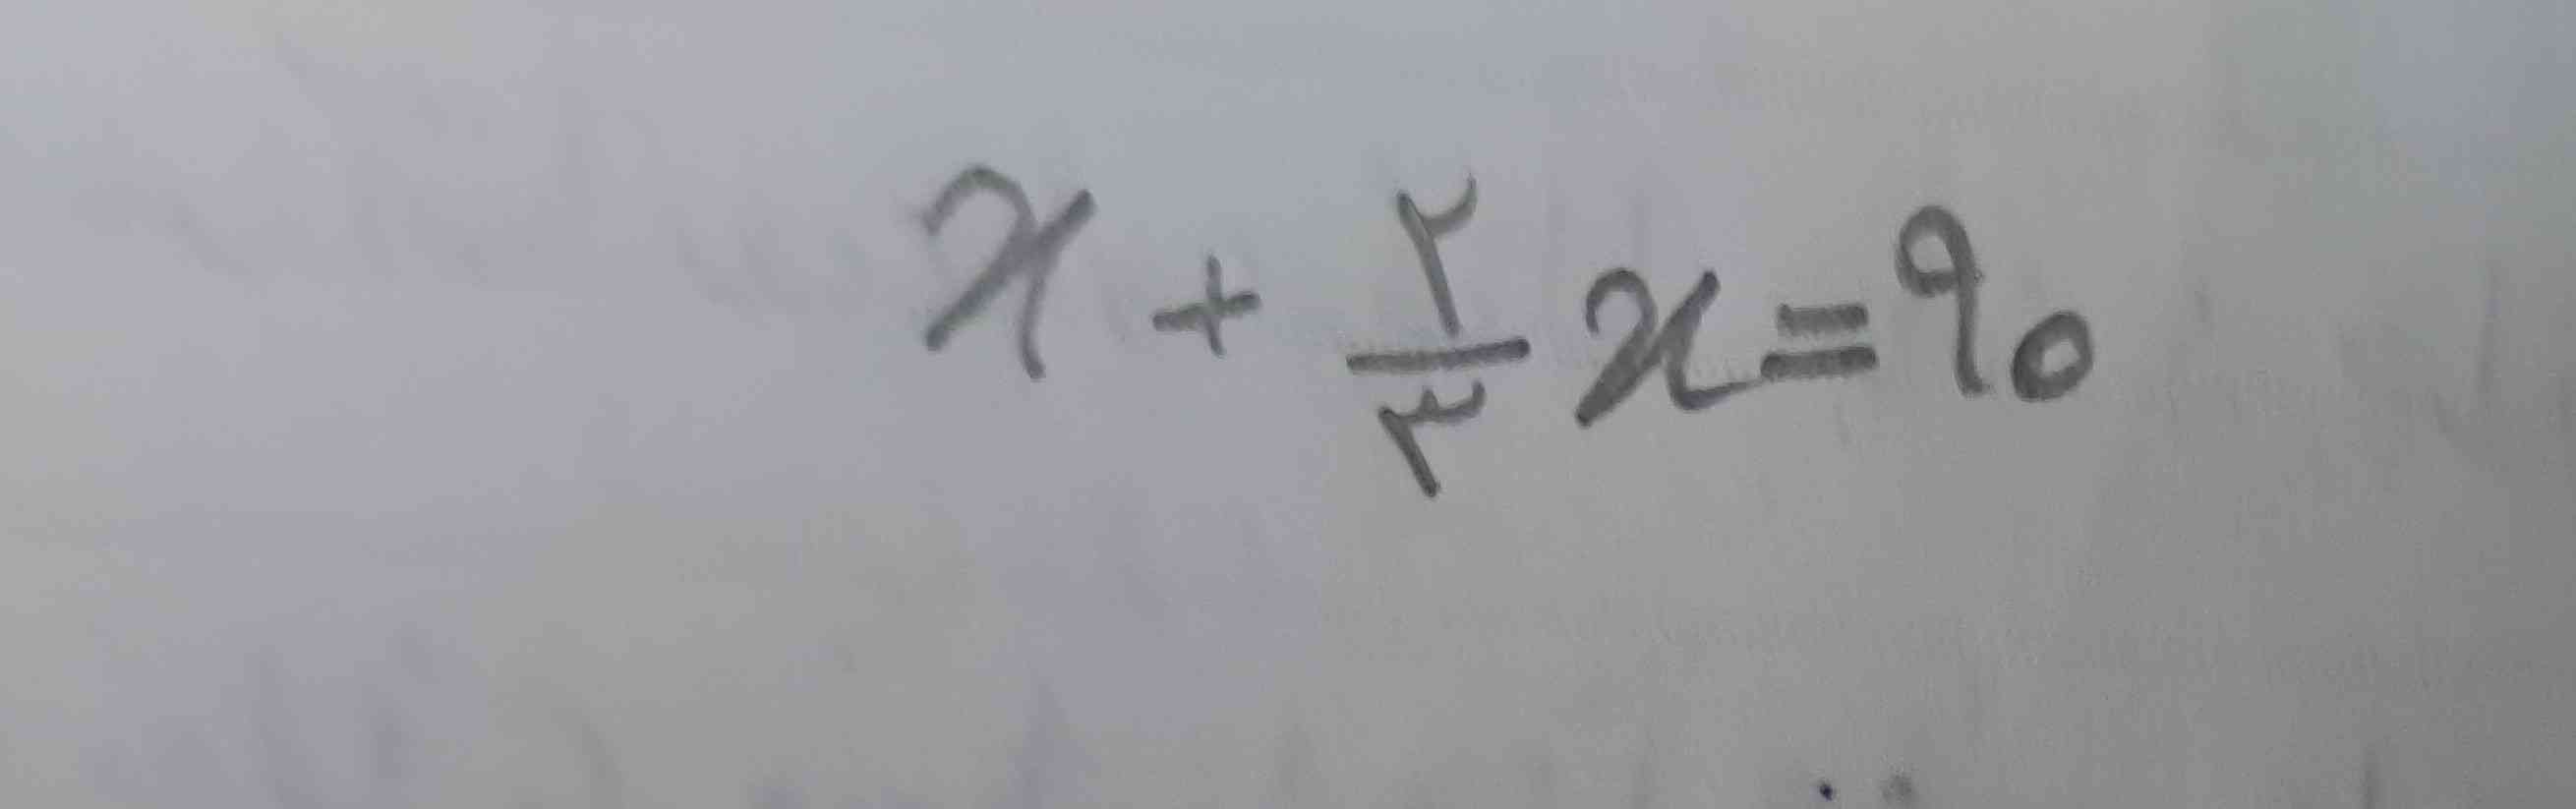 معادله زیر را حل کنید.
بچه ها جواب بدید هر کی مطمئنه .
 تاججج 👑
